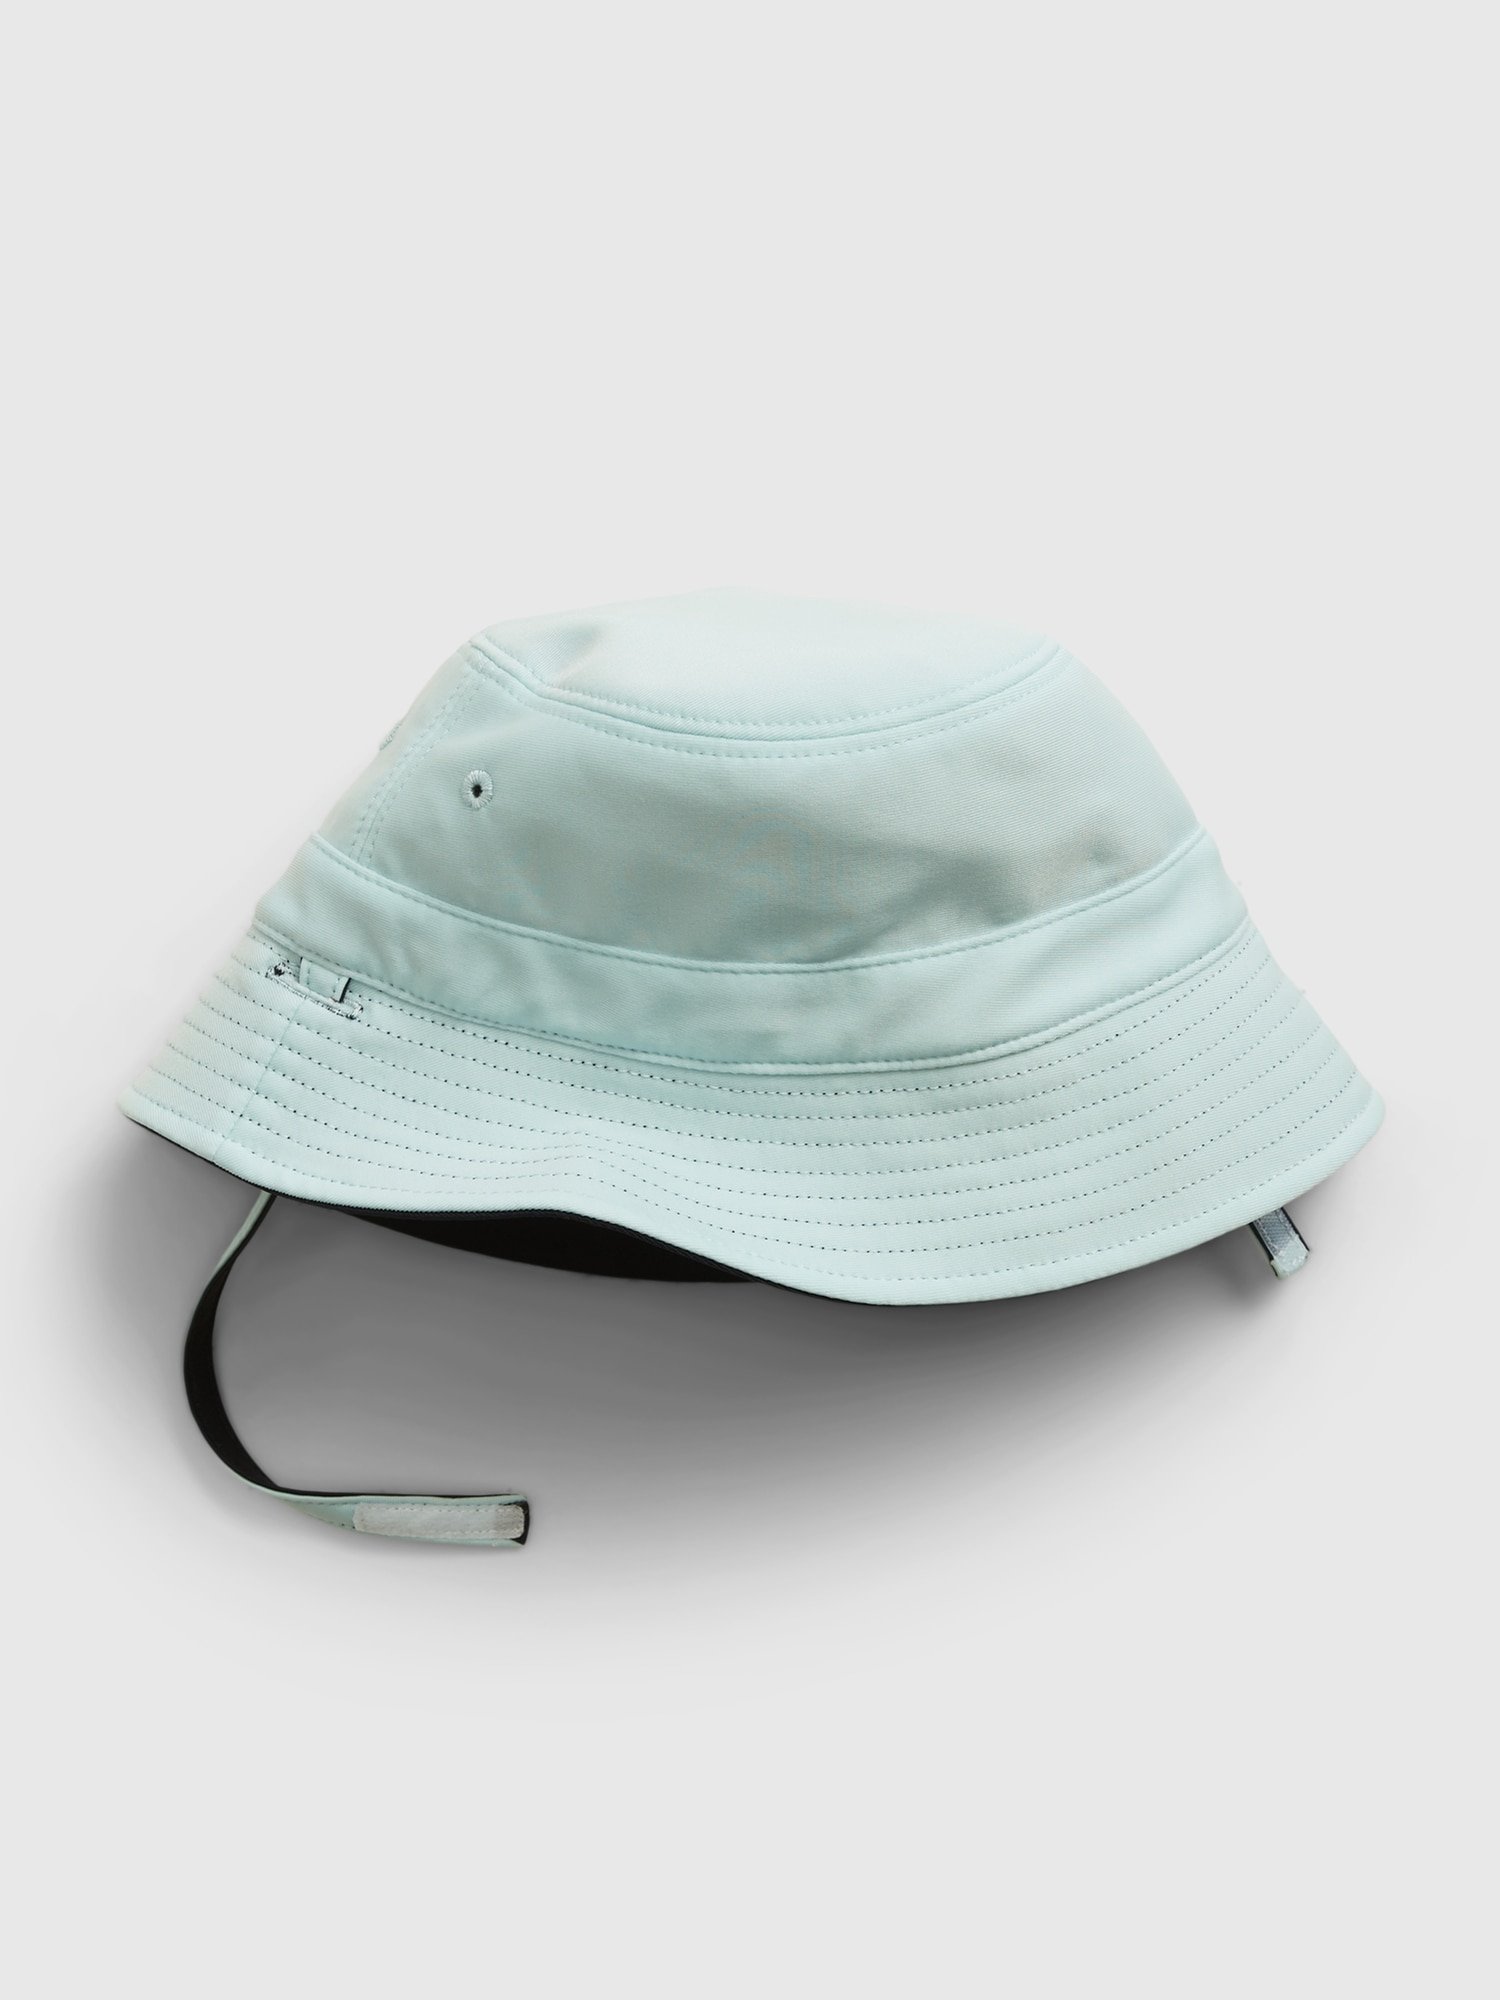 Çift Taraflı Balıkçı Şapka product image